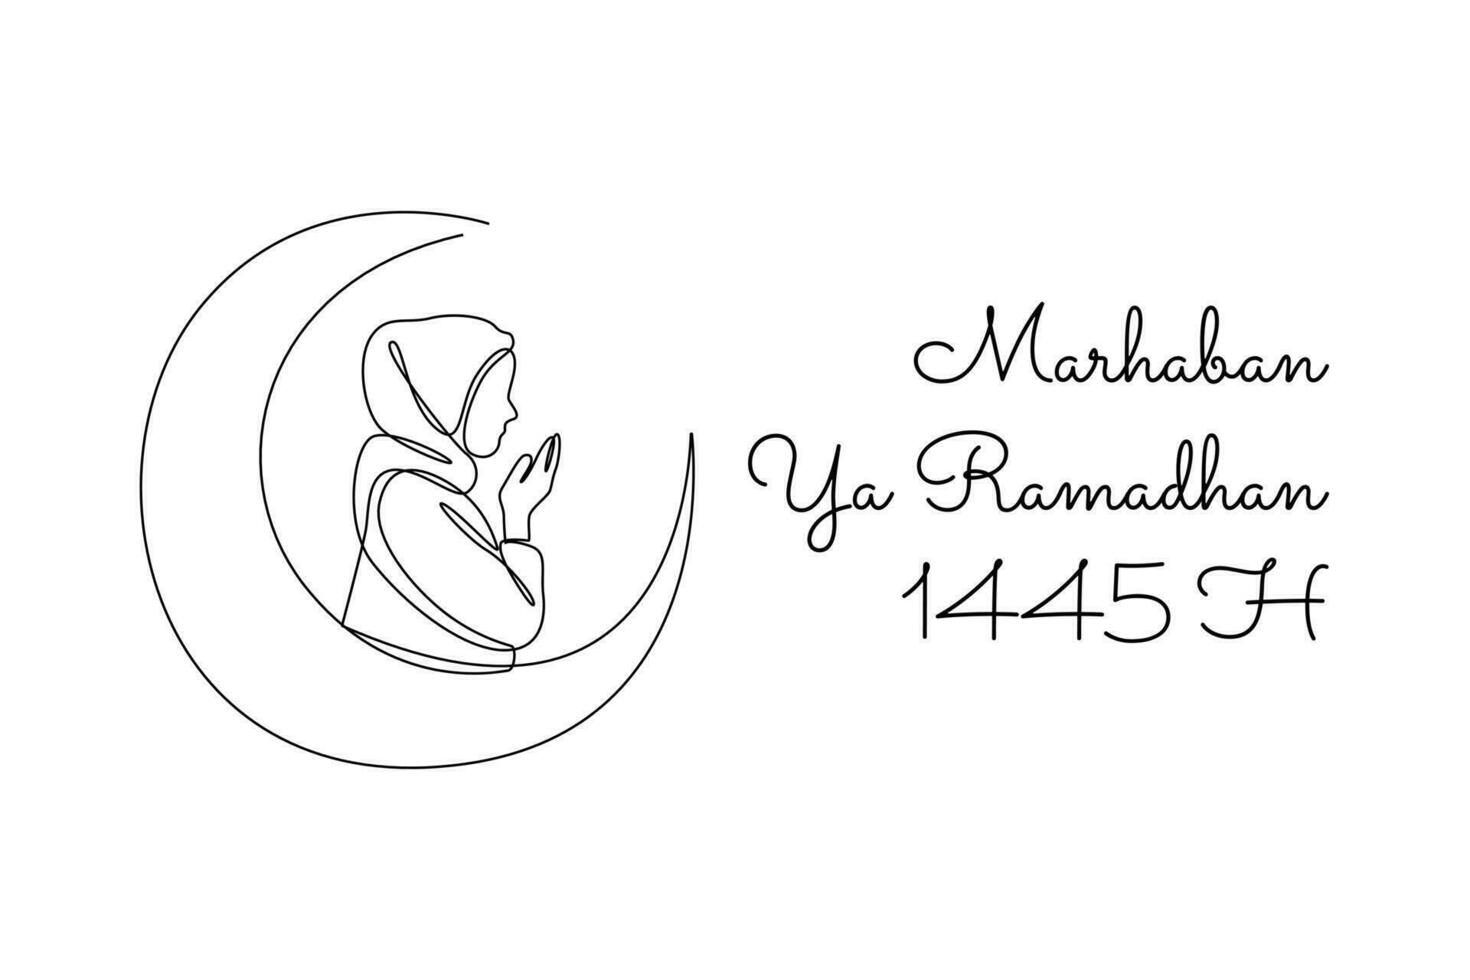 ett kontinuerlig linje teckning av välkomnande ramadan begrepp. klotter vektor illustration i enkel linjär stil.